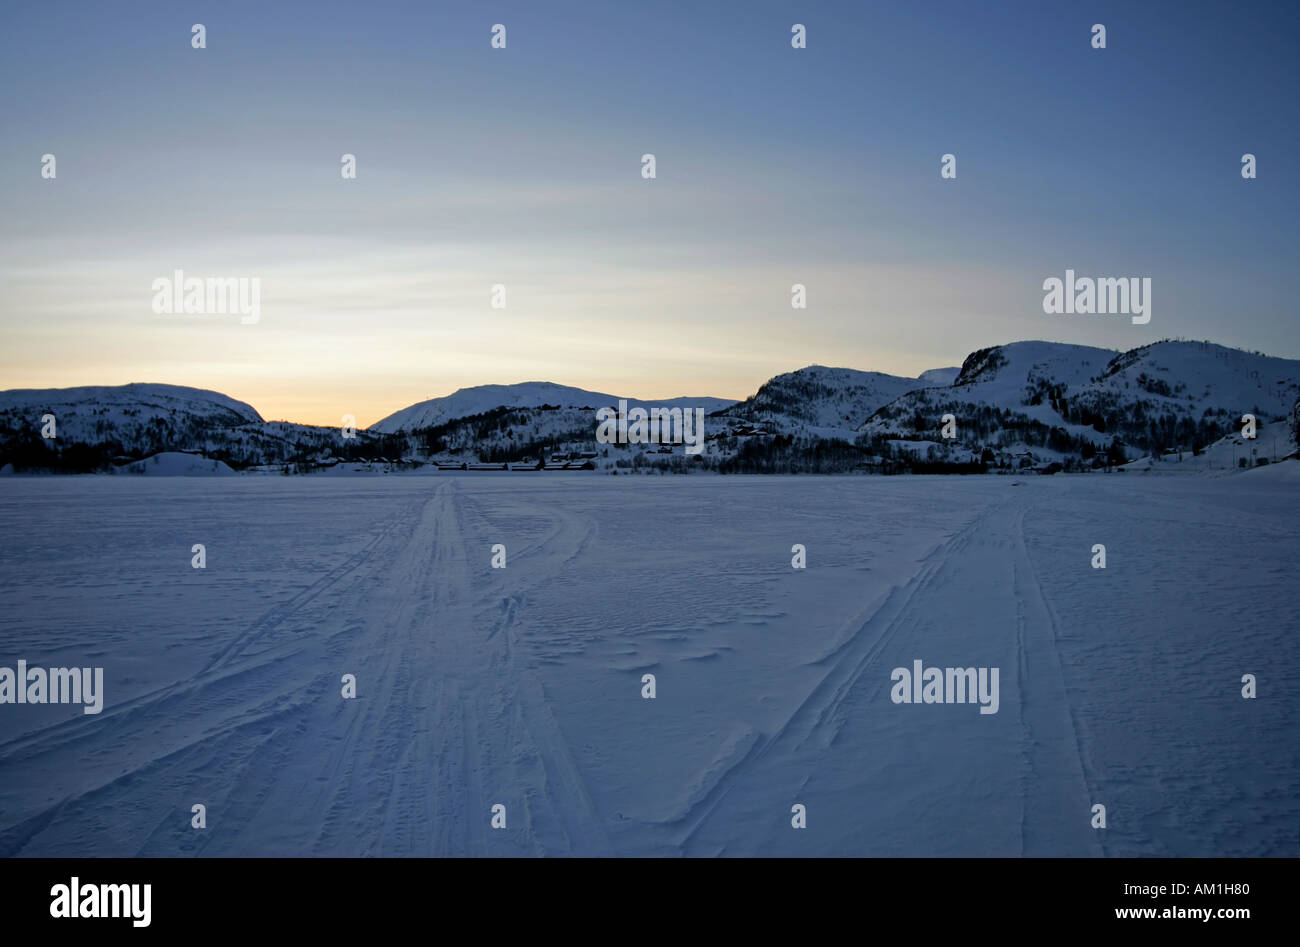 Ski track on frozen lake Stock Photo